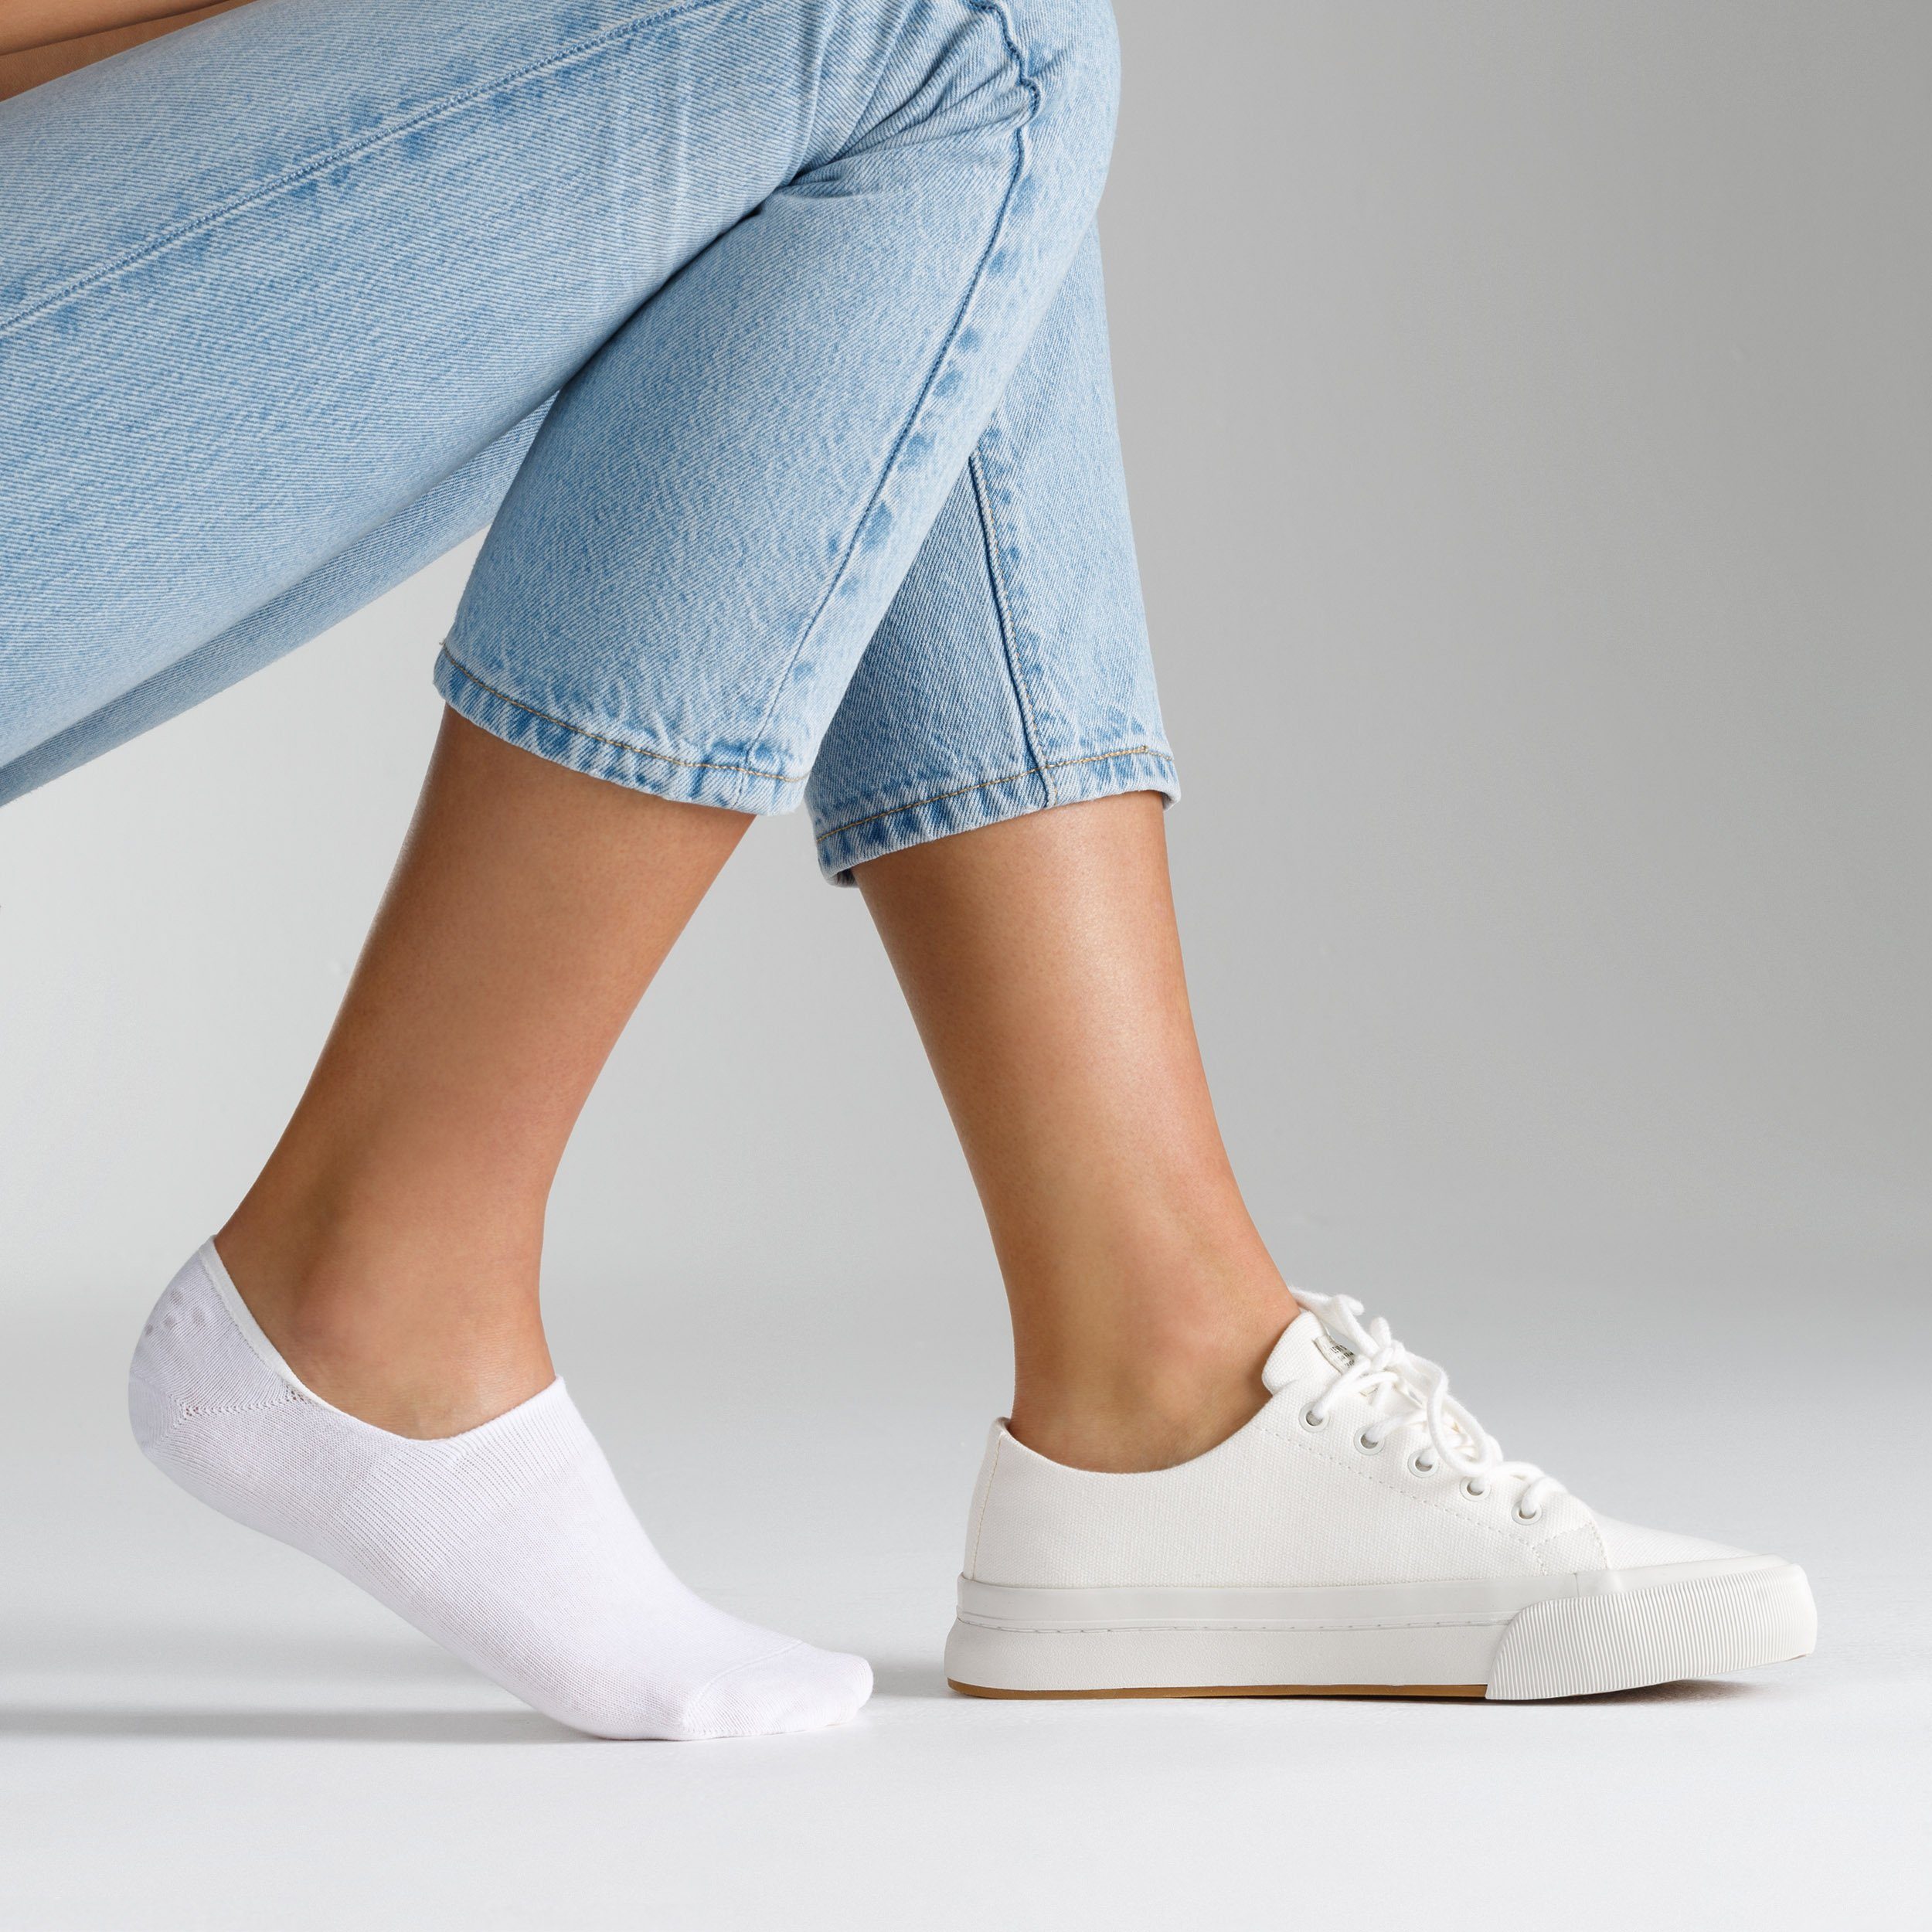 Socken unsichtbare Design bequemen weiß Socken (6-Paar) Camano Sneaker in